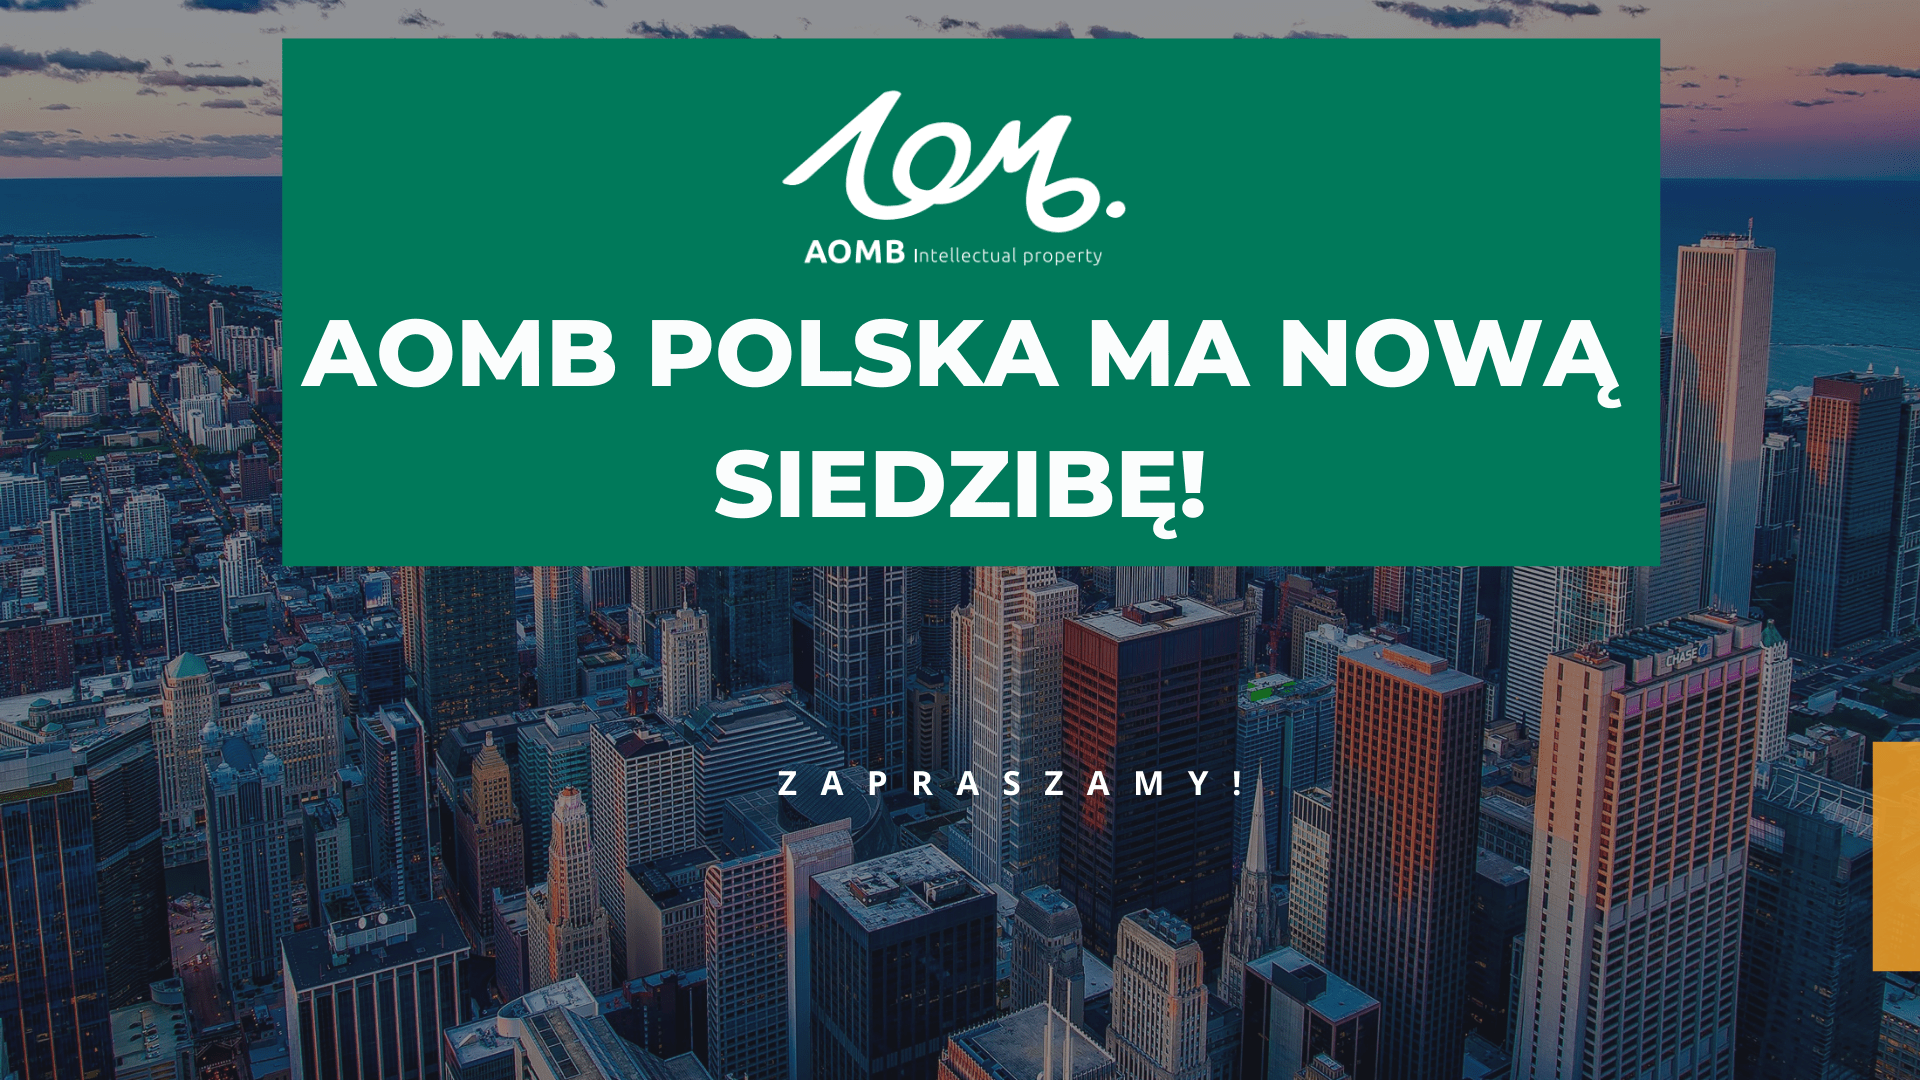 AOMB Polska ma nową siedzibę!